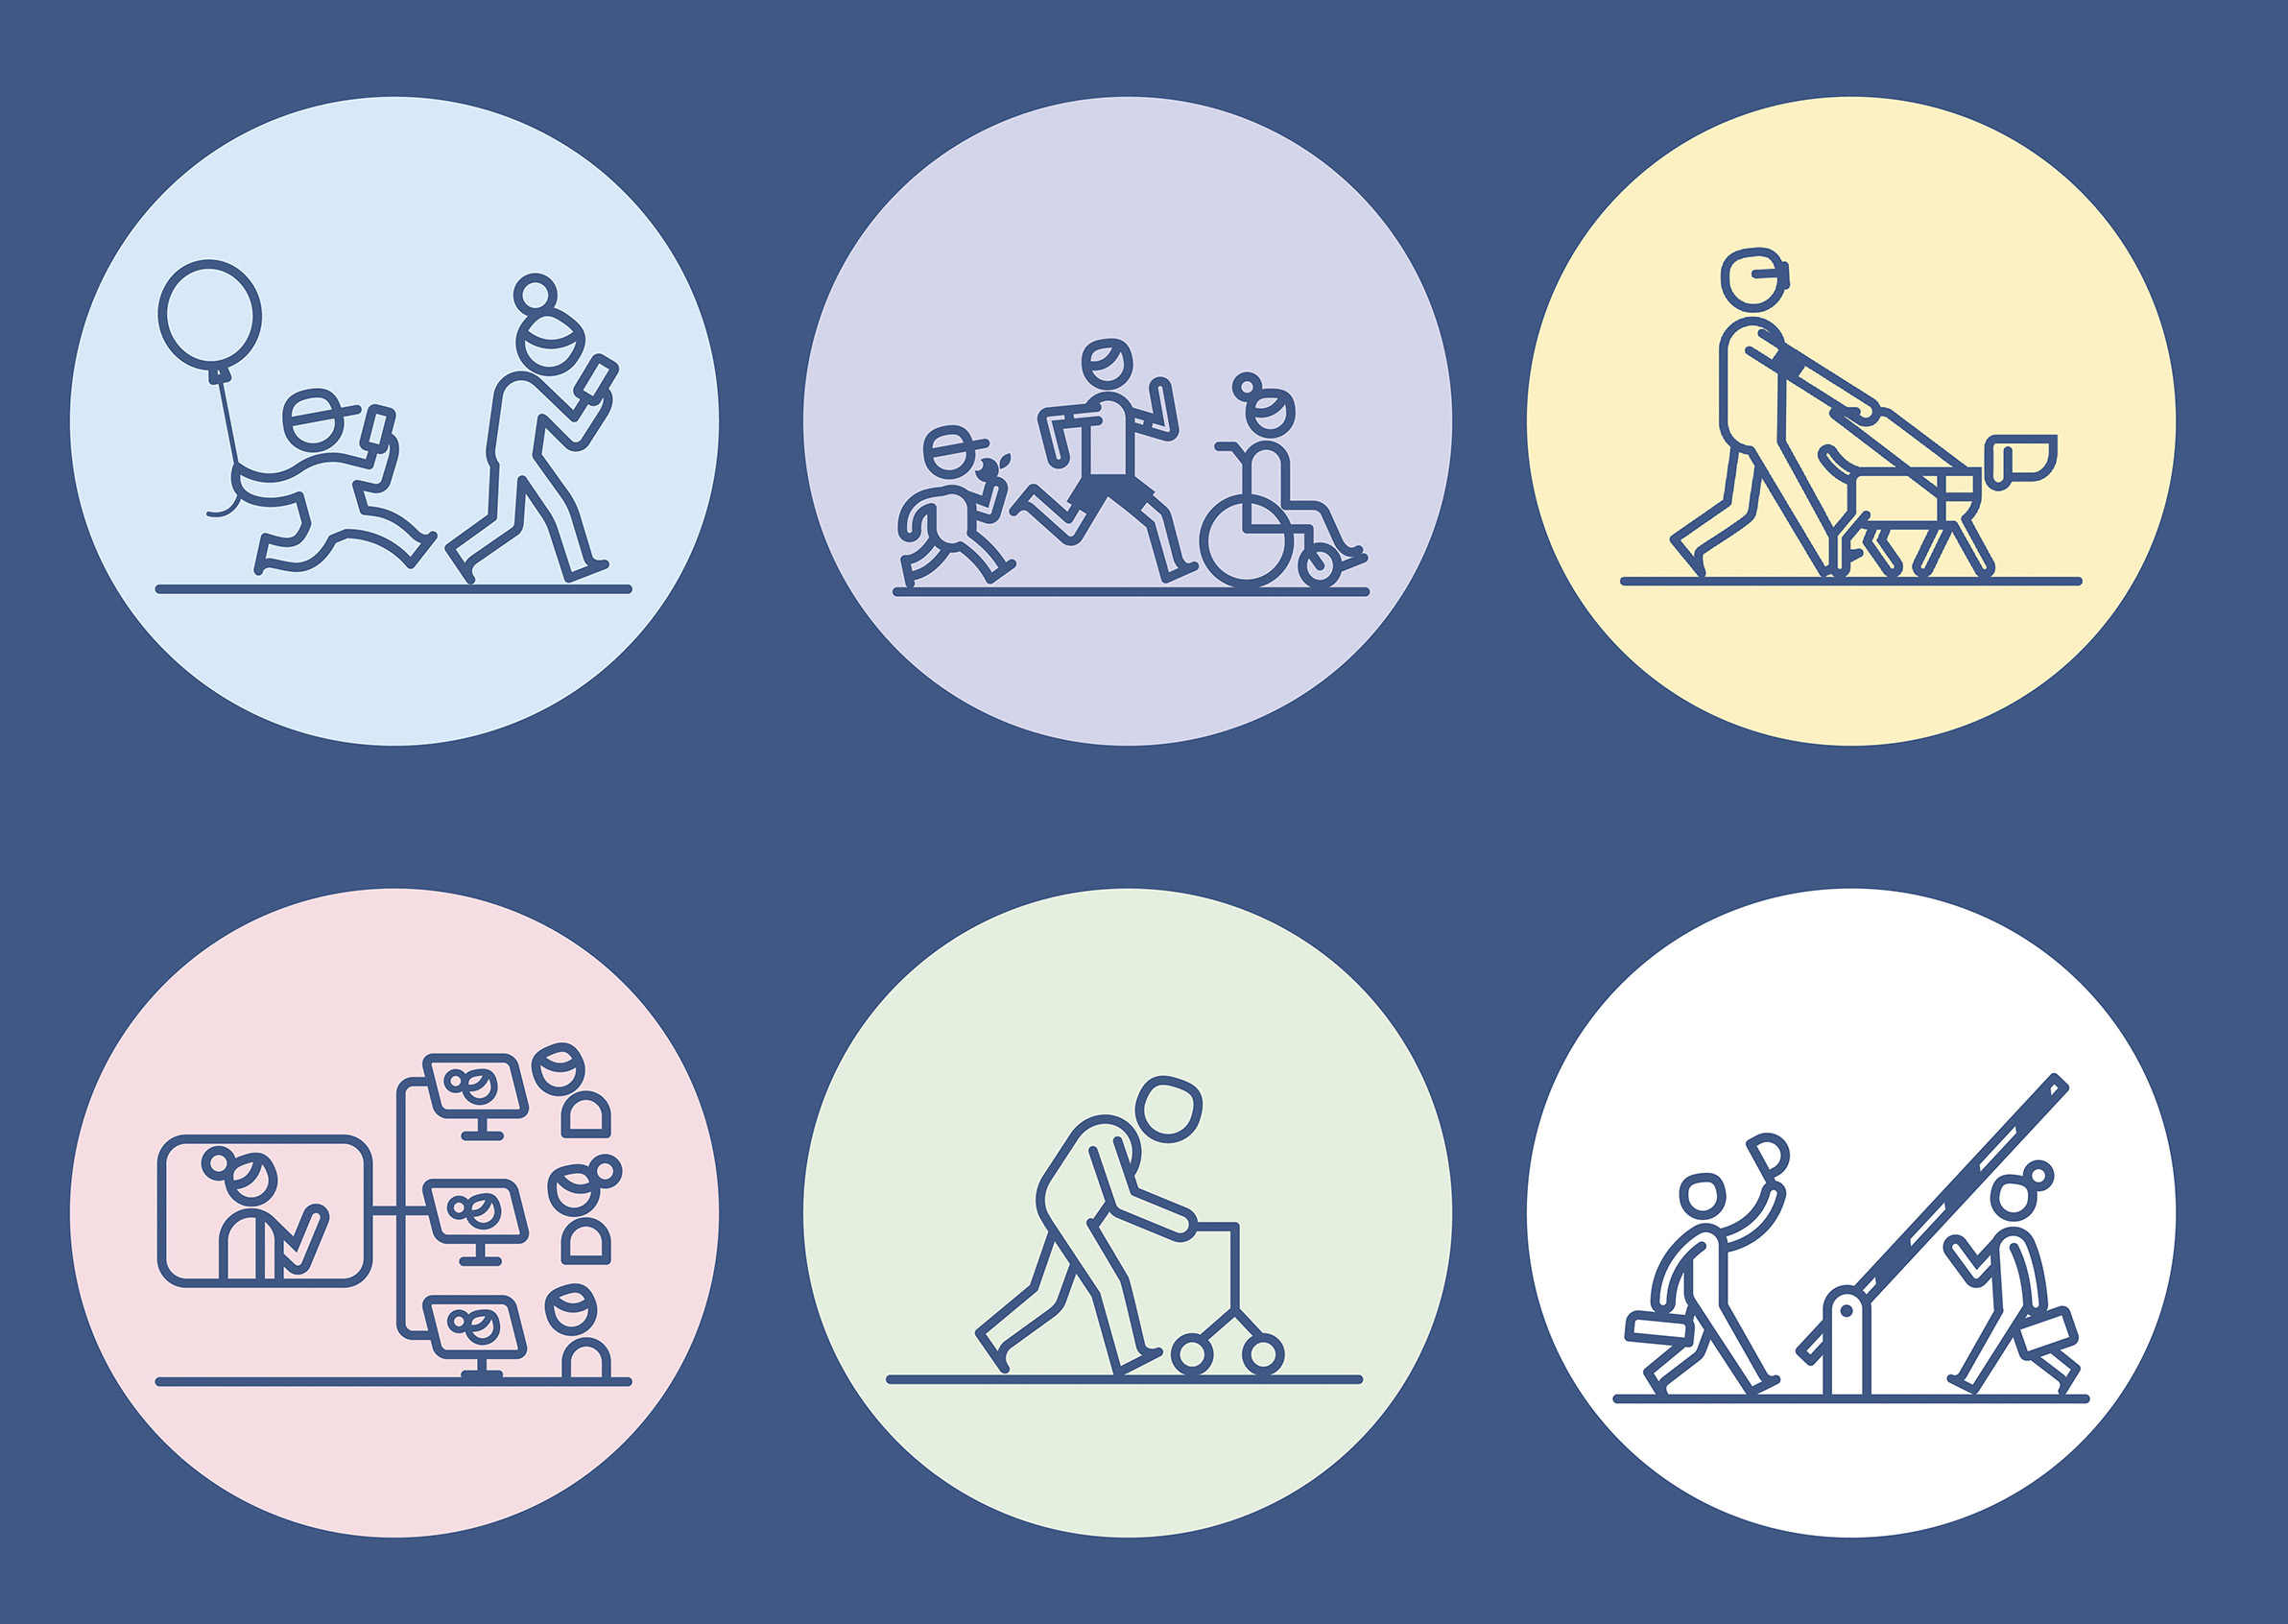 6 ikoner illustrerar de 6 verksamhetsområden